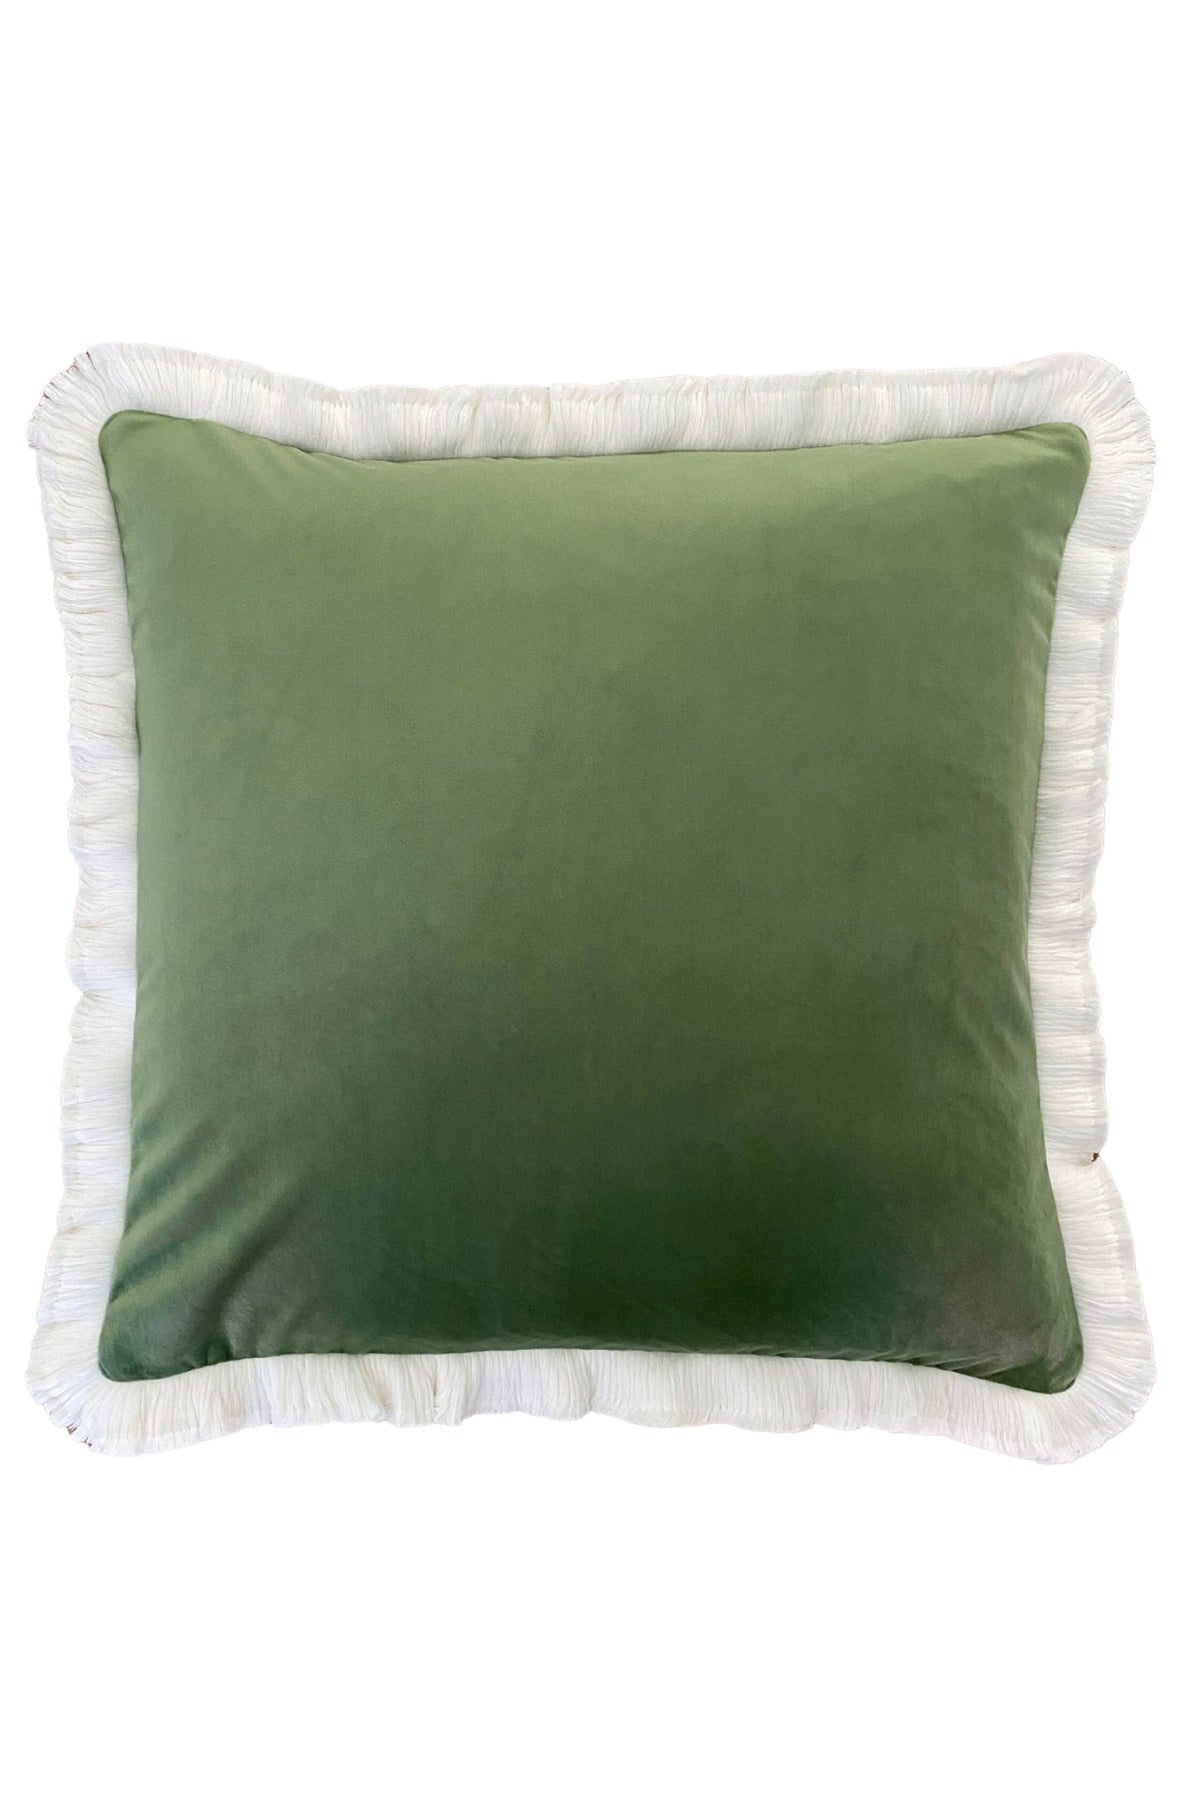 Moss Velvet with Fringe Cushion